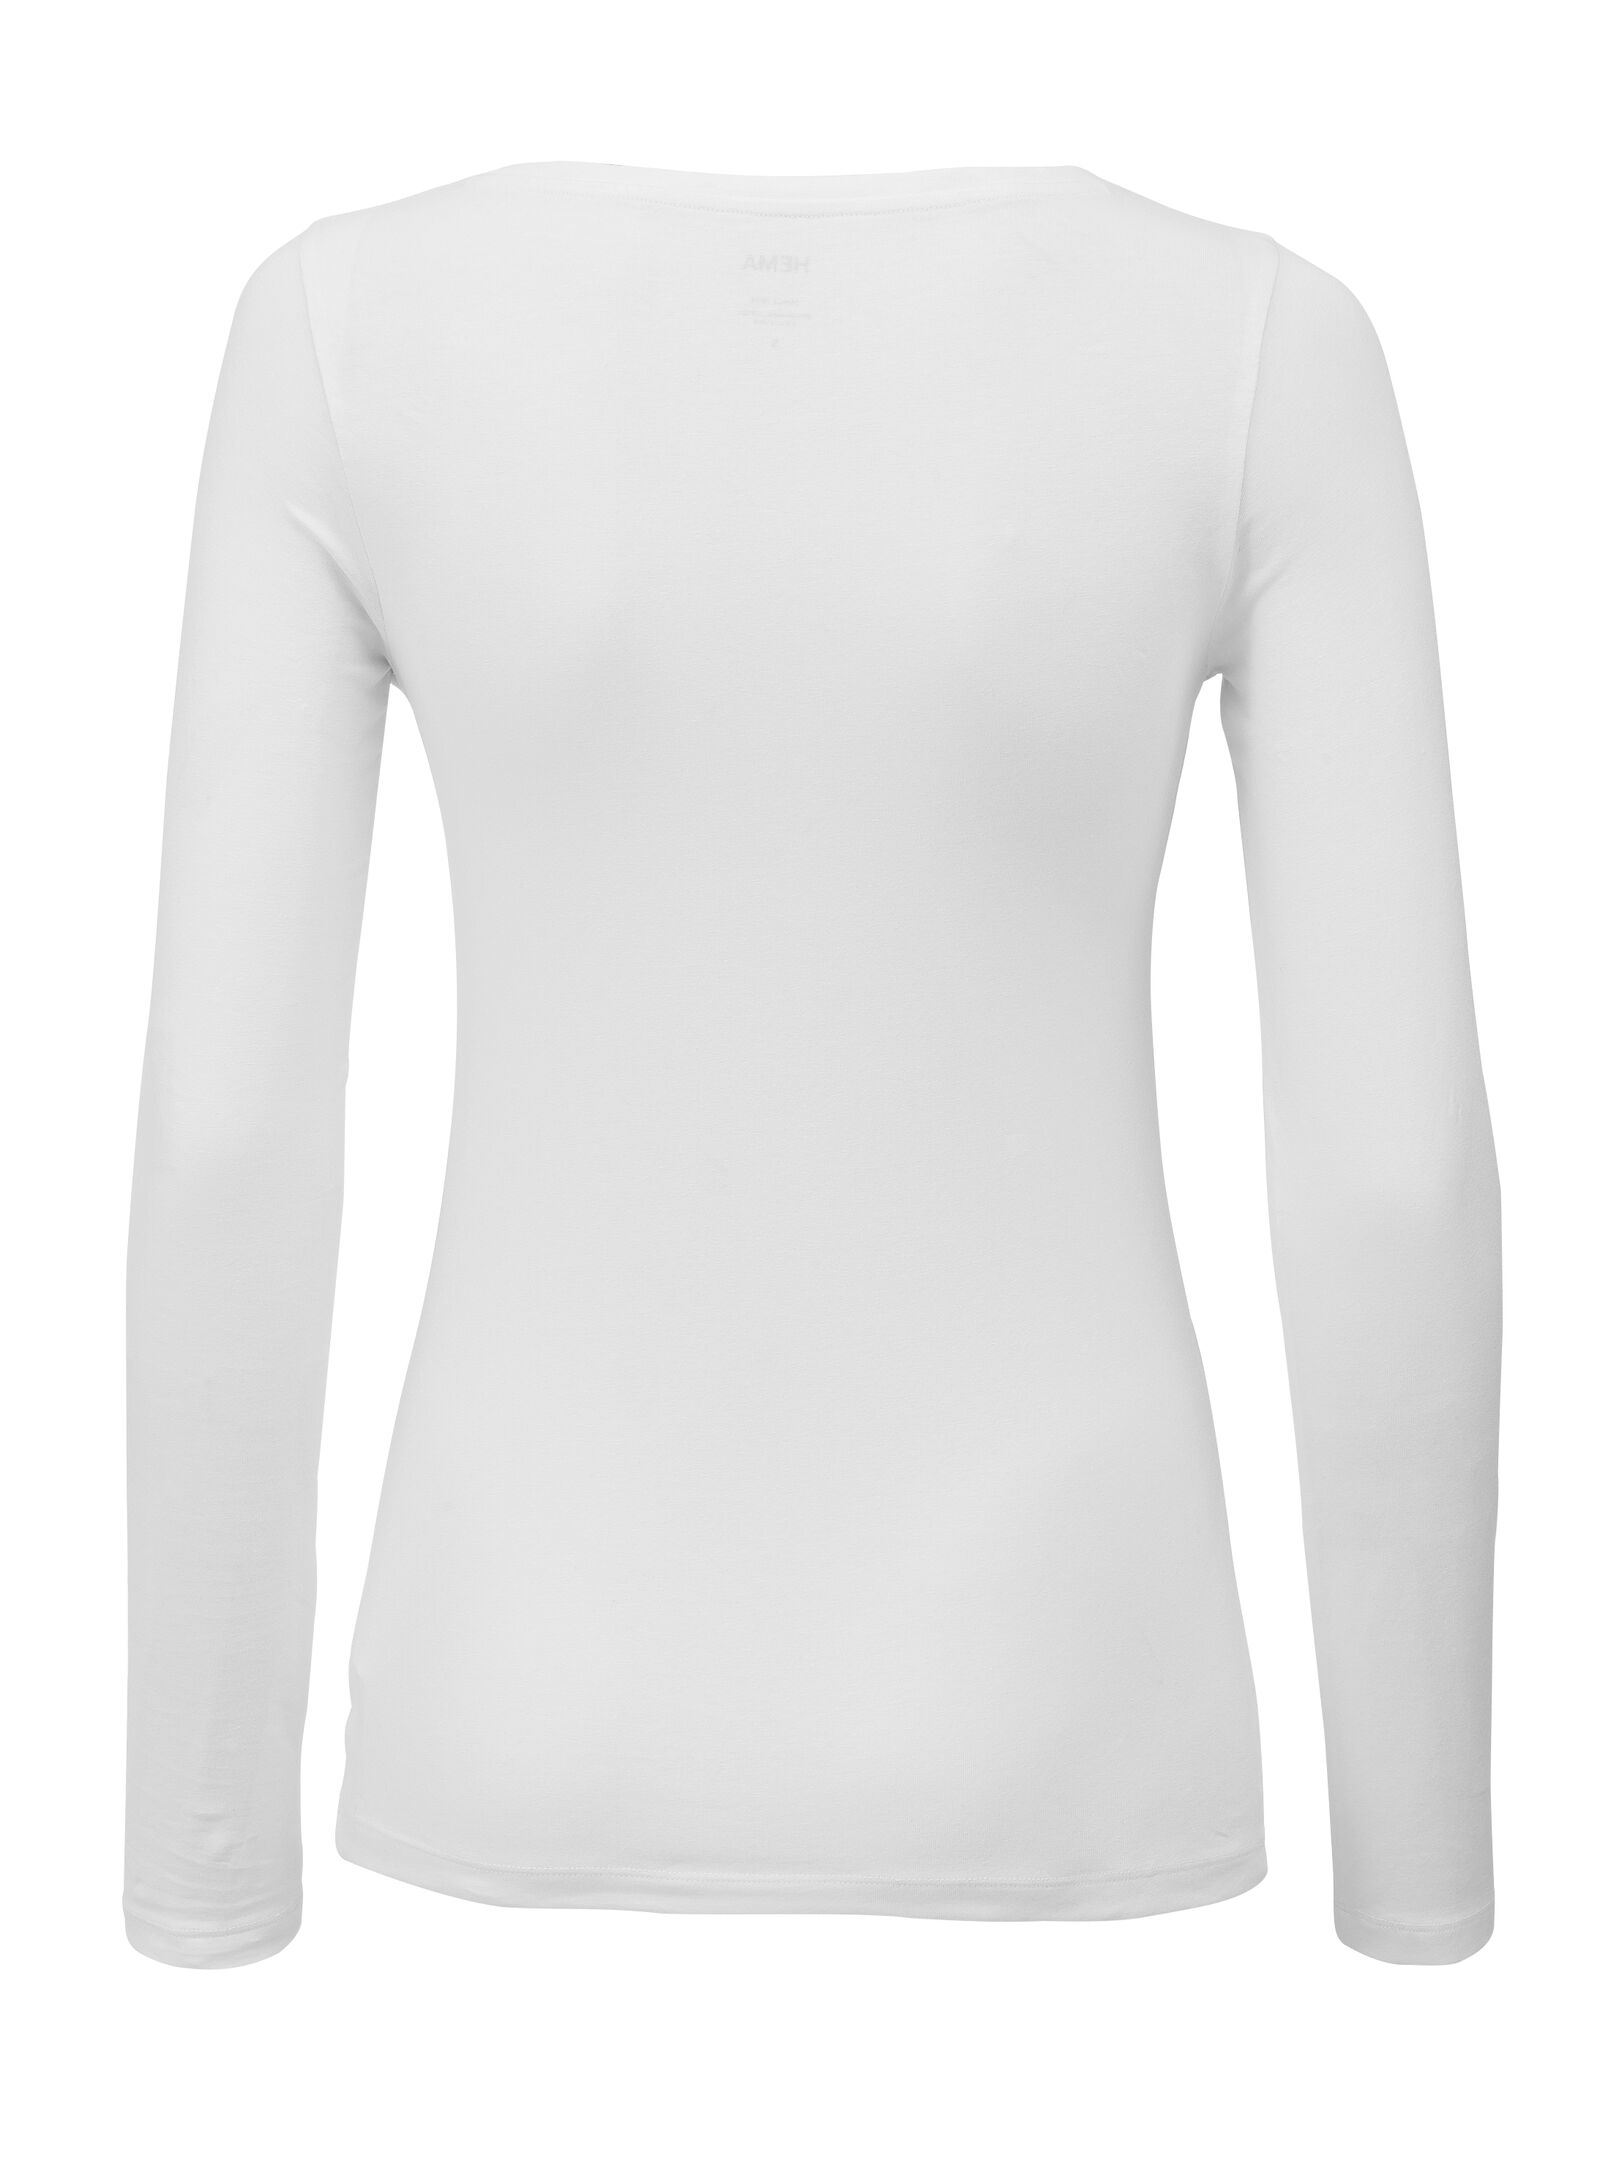 Damen-Shirt weiß XL - 36381774 - HEMA